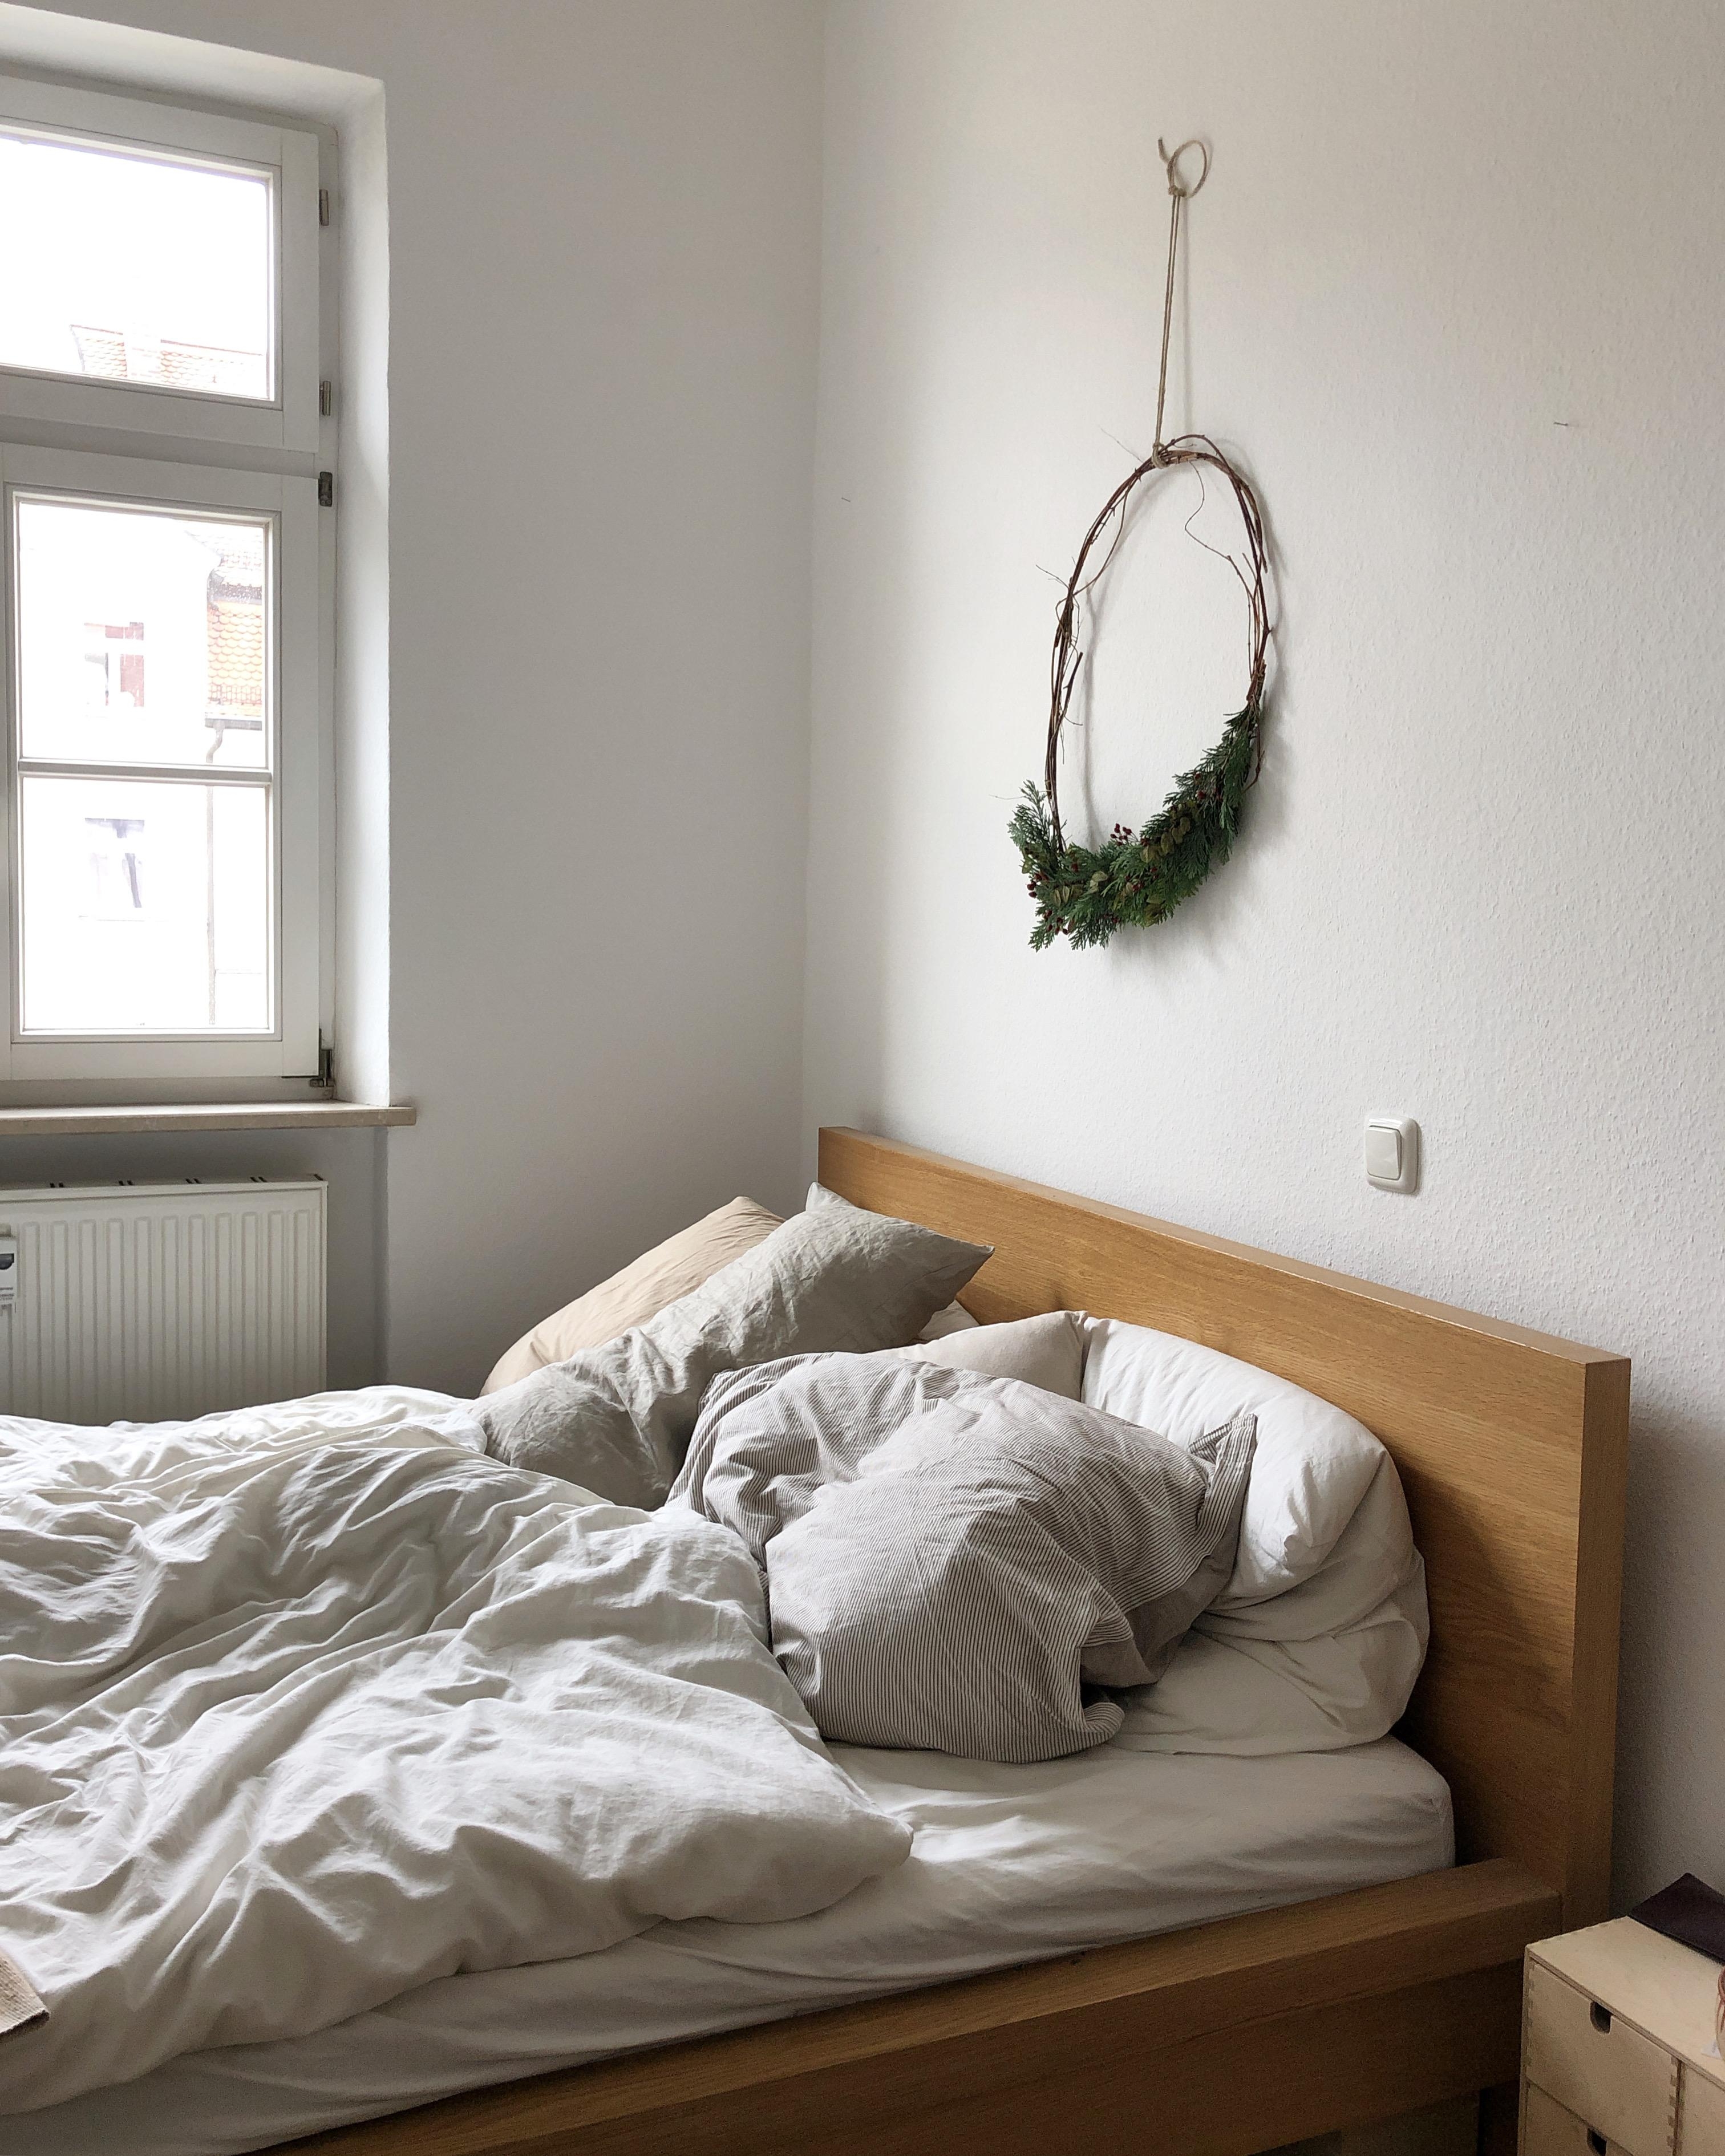 Guten Morgen aus dem #schlafzimmer. #deko #diy #kranz #bett #minimalistisch 